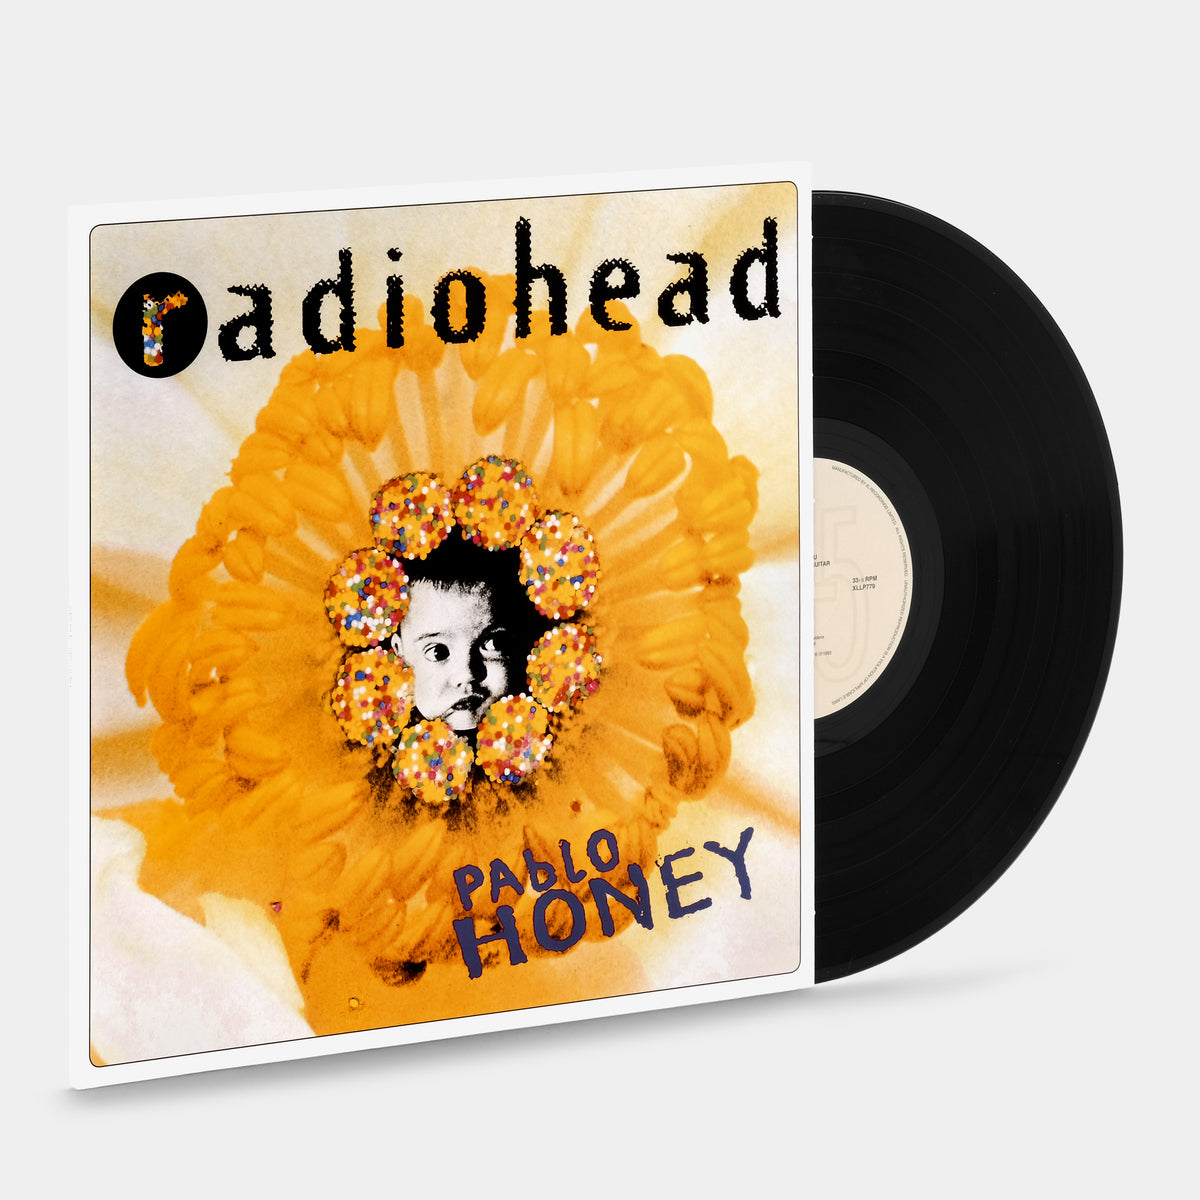 Radiohead - Pablo Honey (Vinyl) au meilleur prix sur